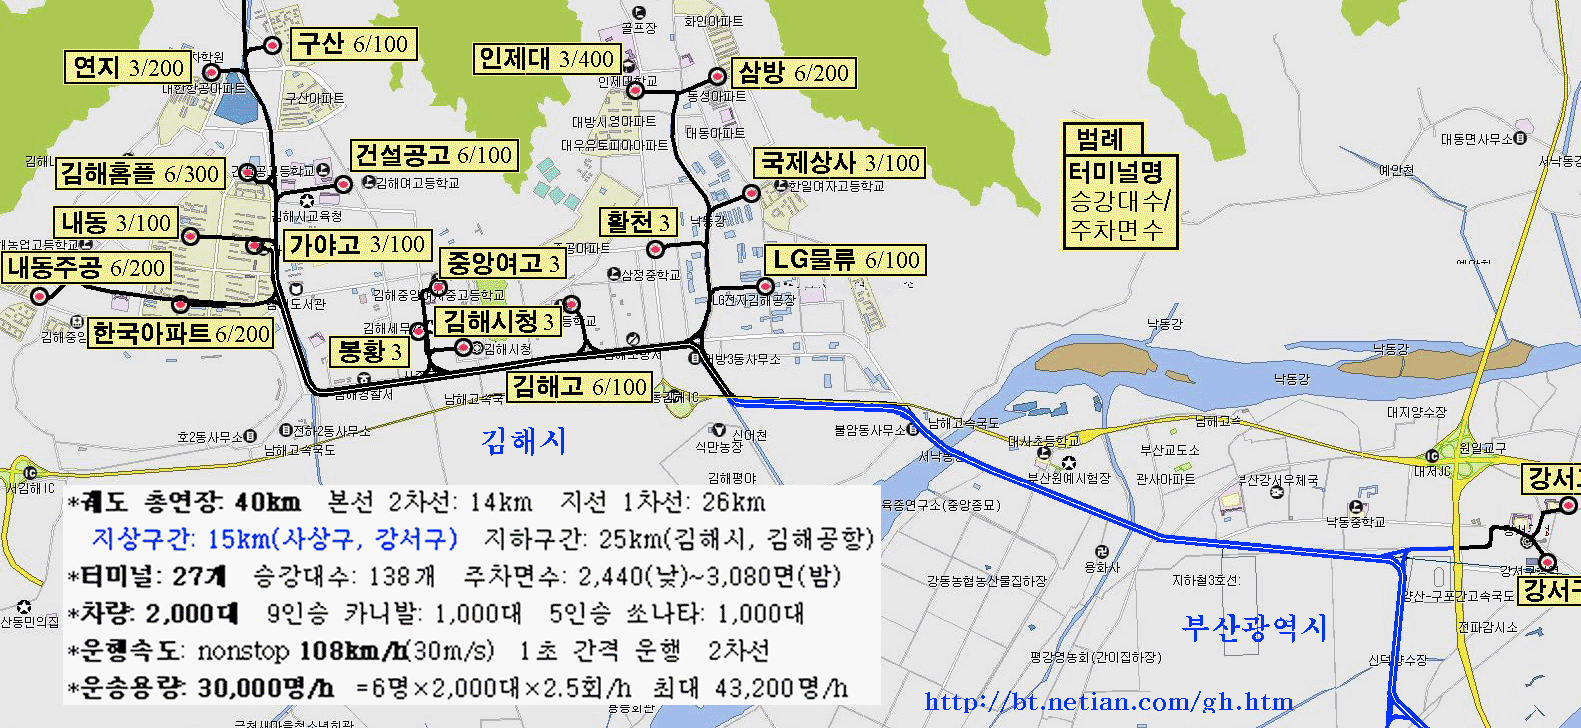 김해~부산간 건설계획